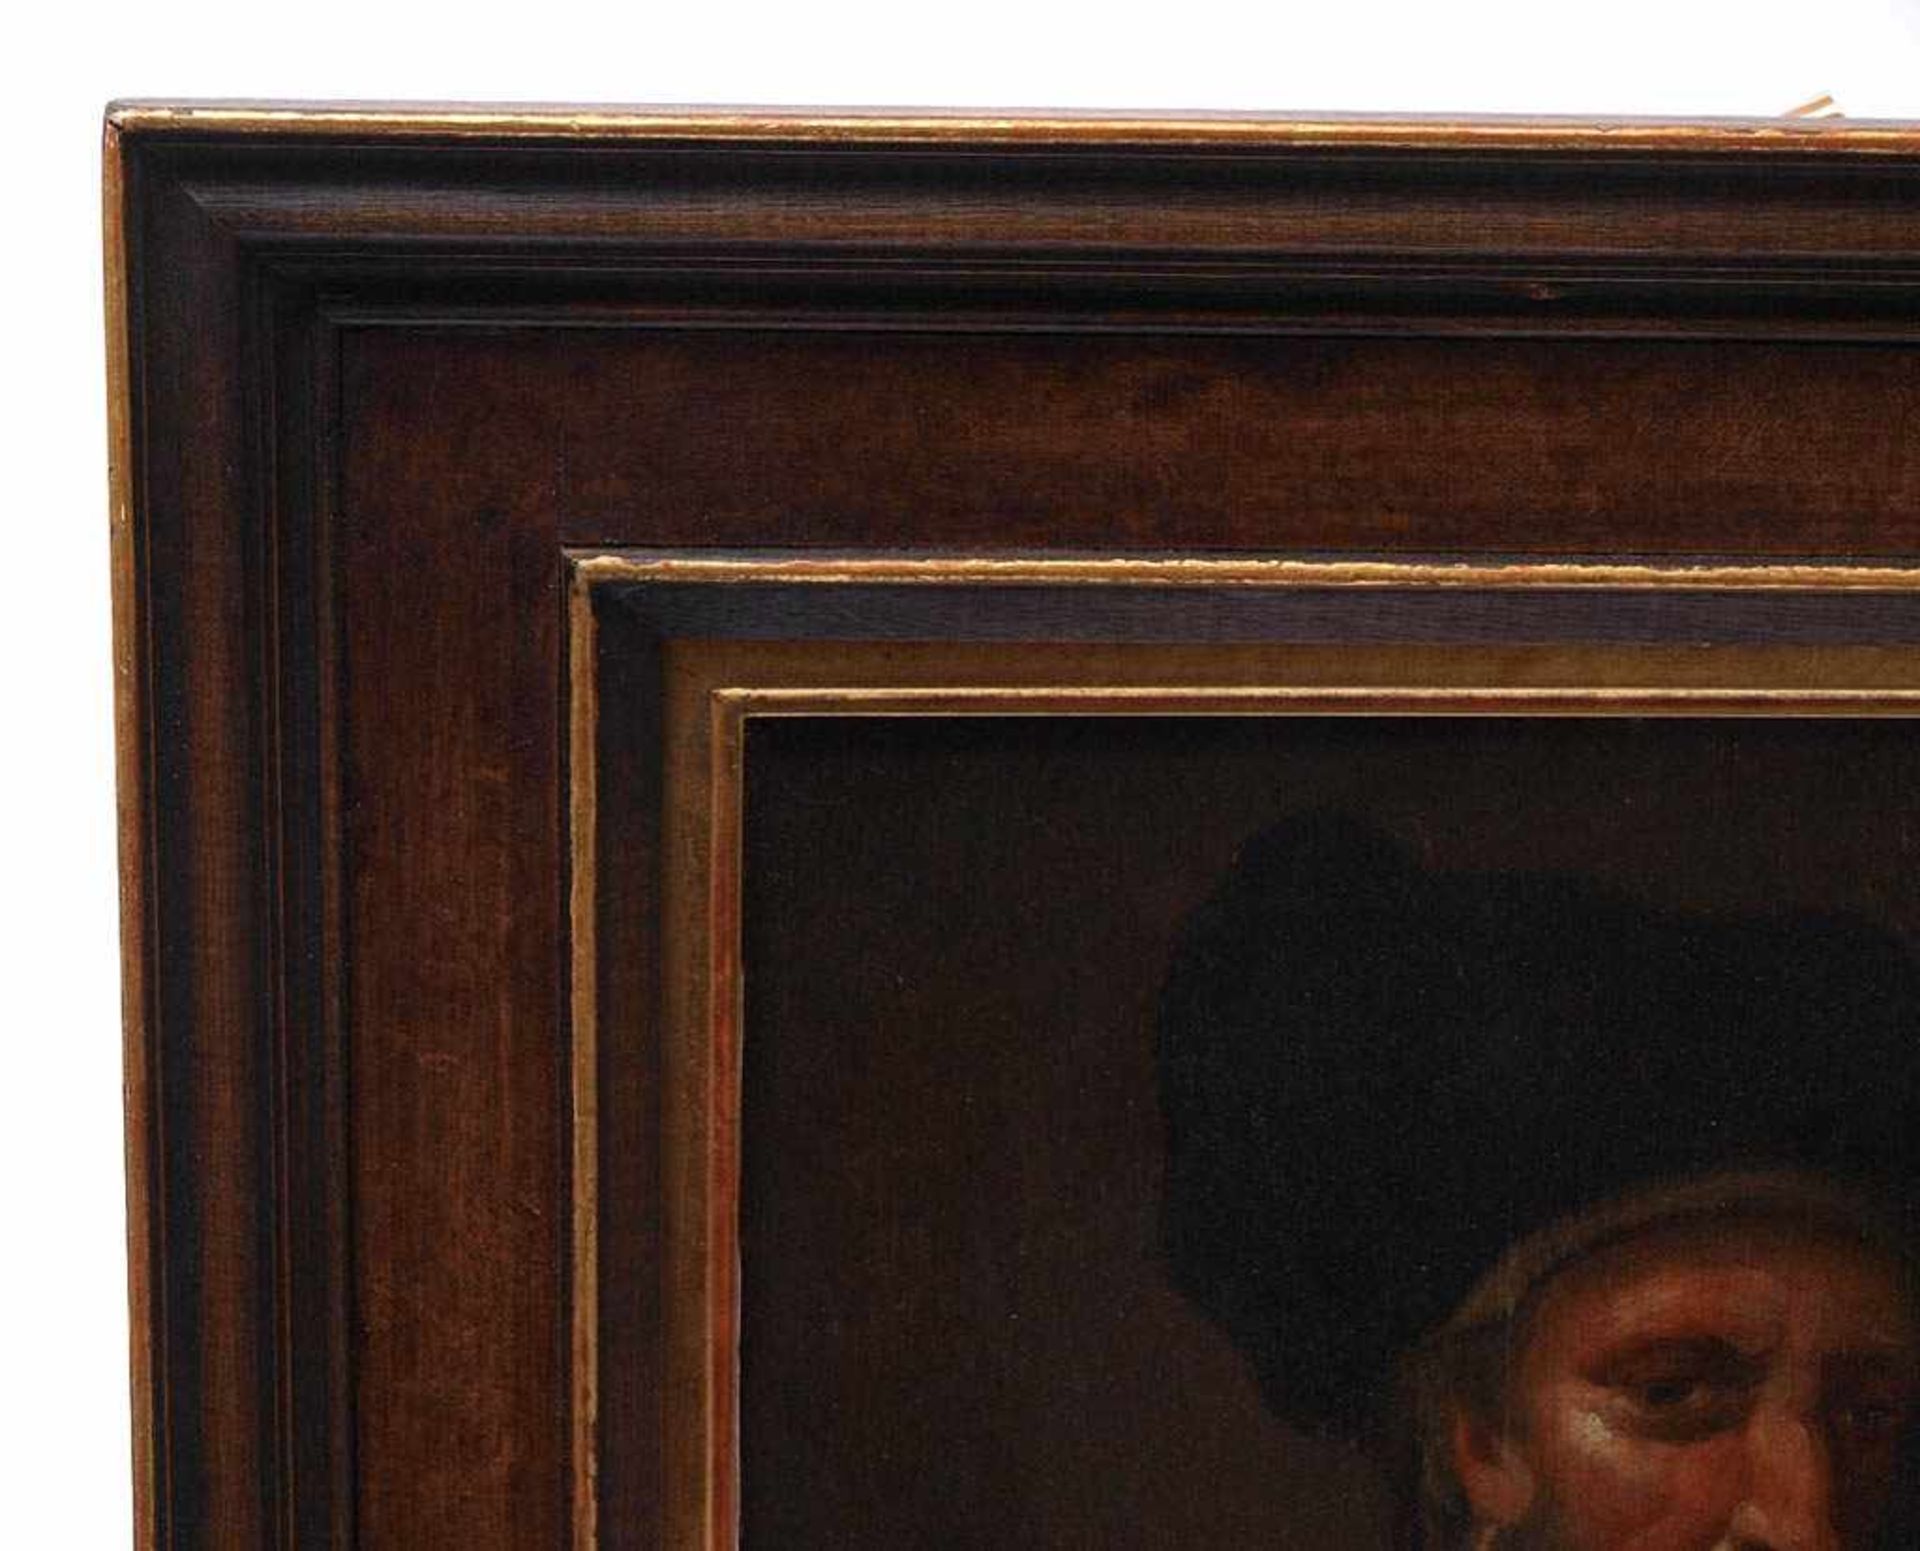 Zwei Portraits19. Jh. Bildnisse zweier alter Männer im Stil des 17. Jahrhunderts. Öl auf Holz, verso - Bild 7 aus 10